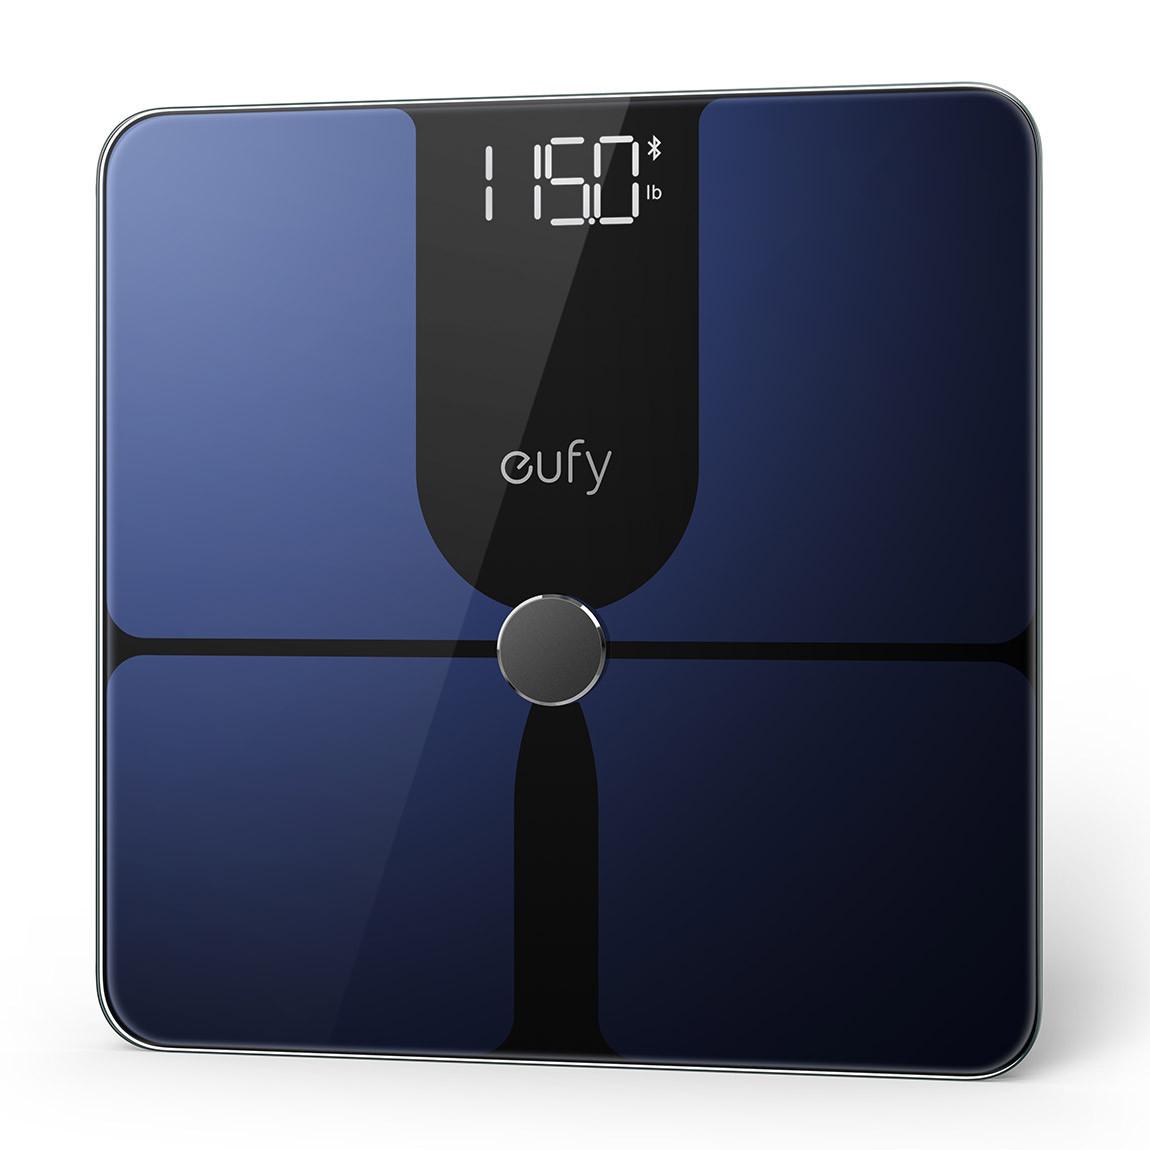 eufy Smart Scale P1